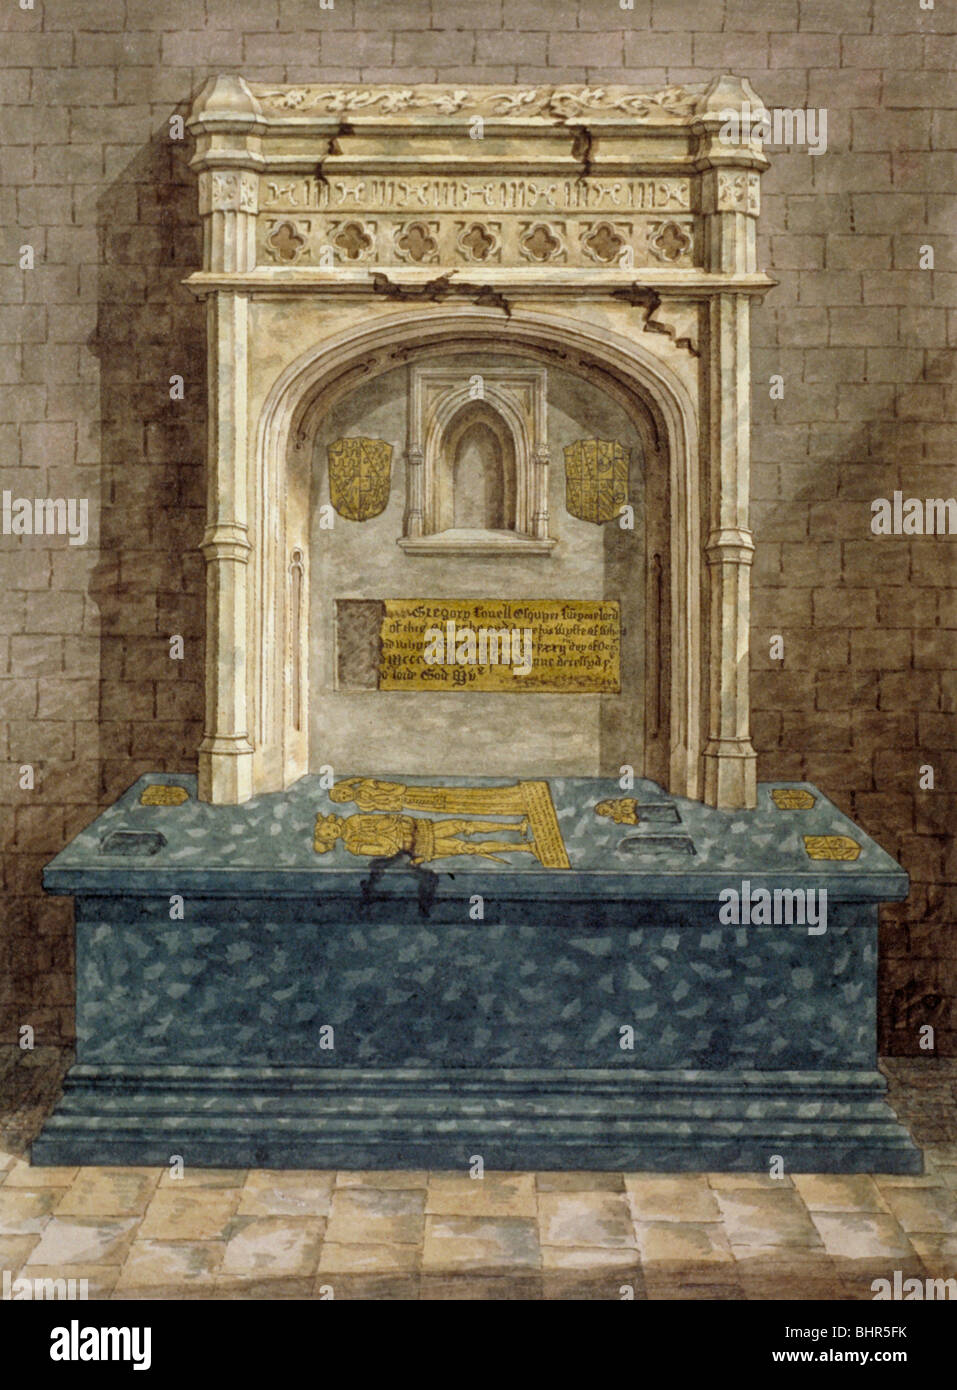 Tombe de Gregory Lovell, église Saint Pierre et Saint Paul, Harlington, Middlesex, c1810. Artiste : Anon Banque D'Images